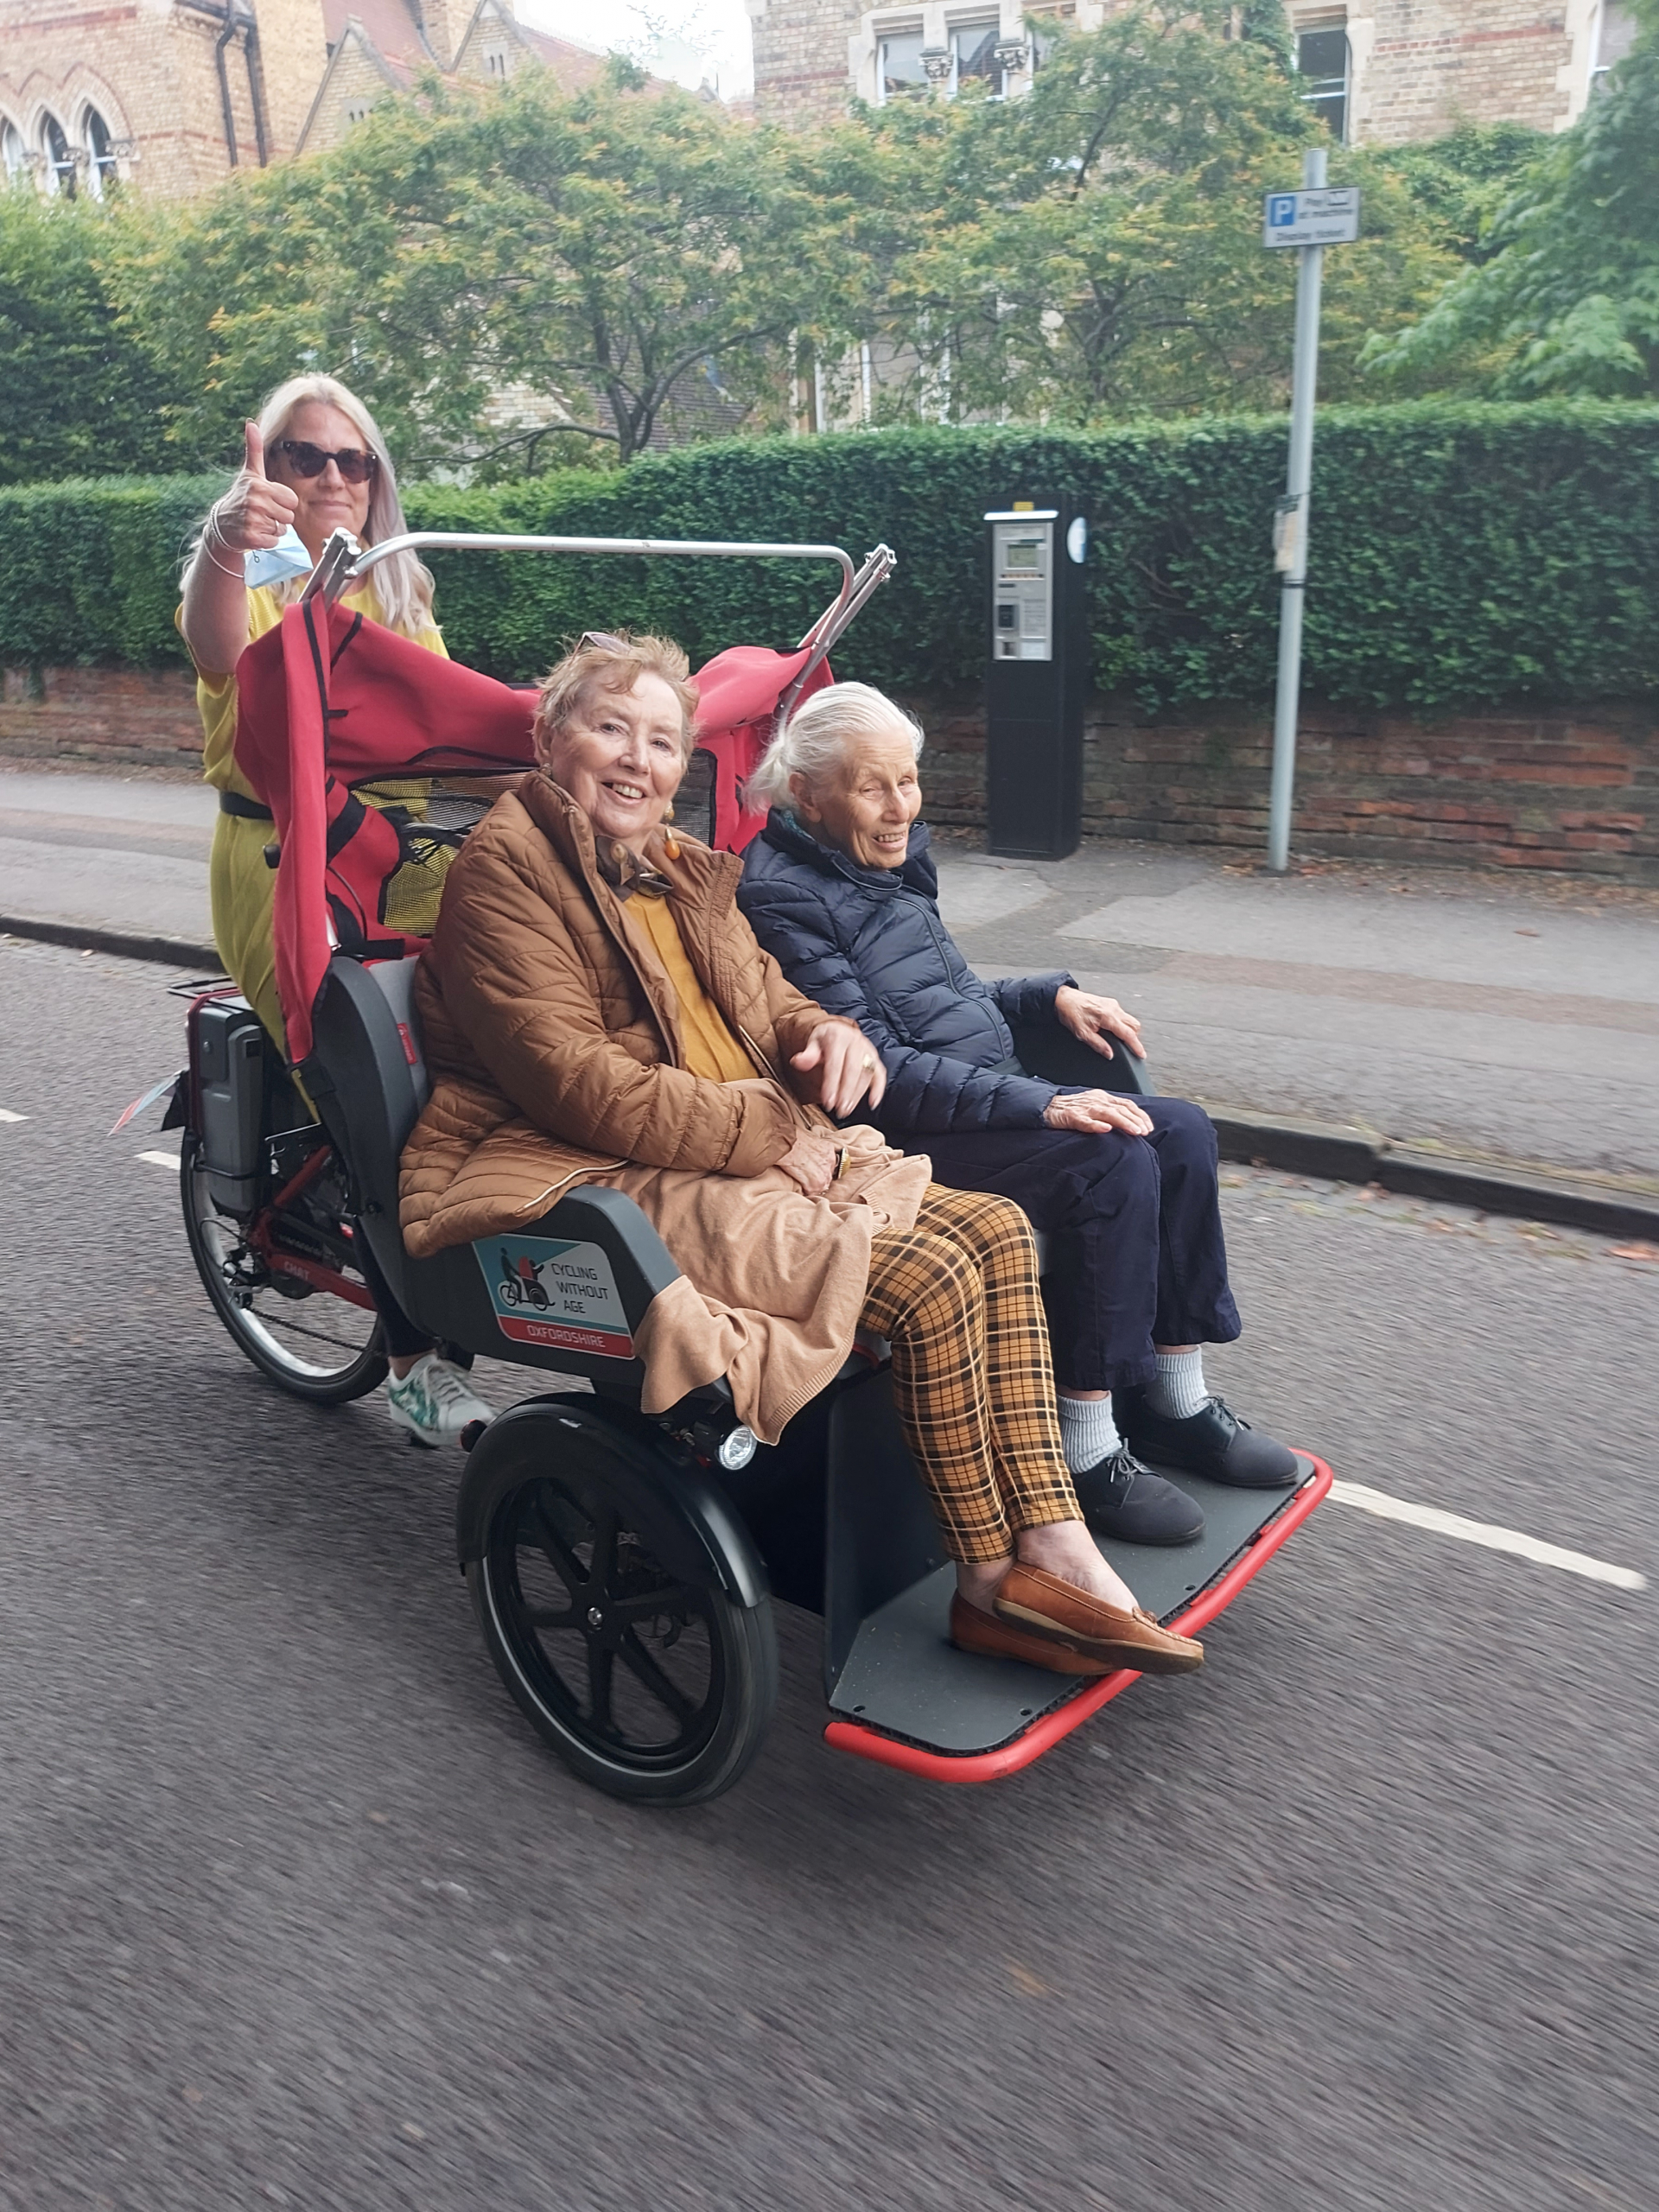 A rickshaw ride around Oxford